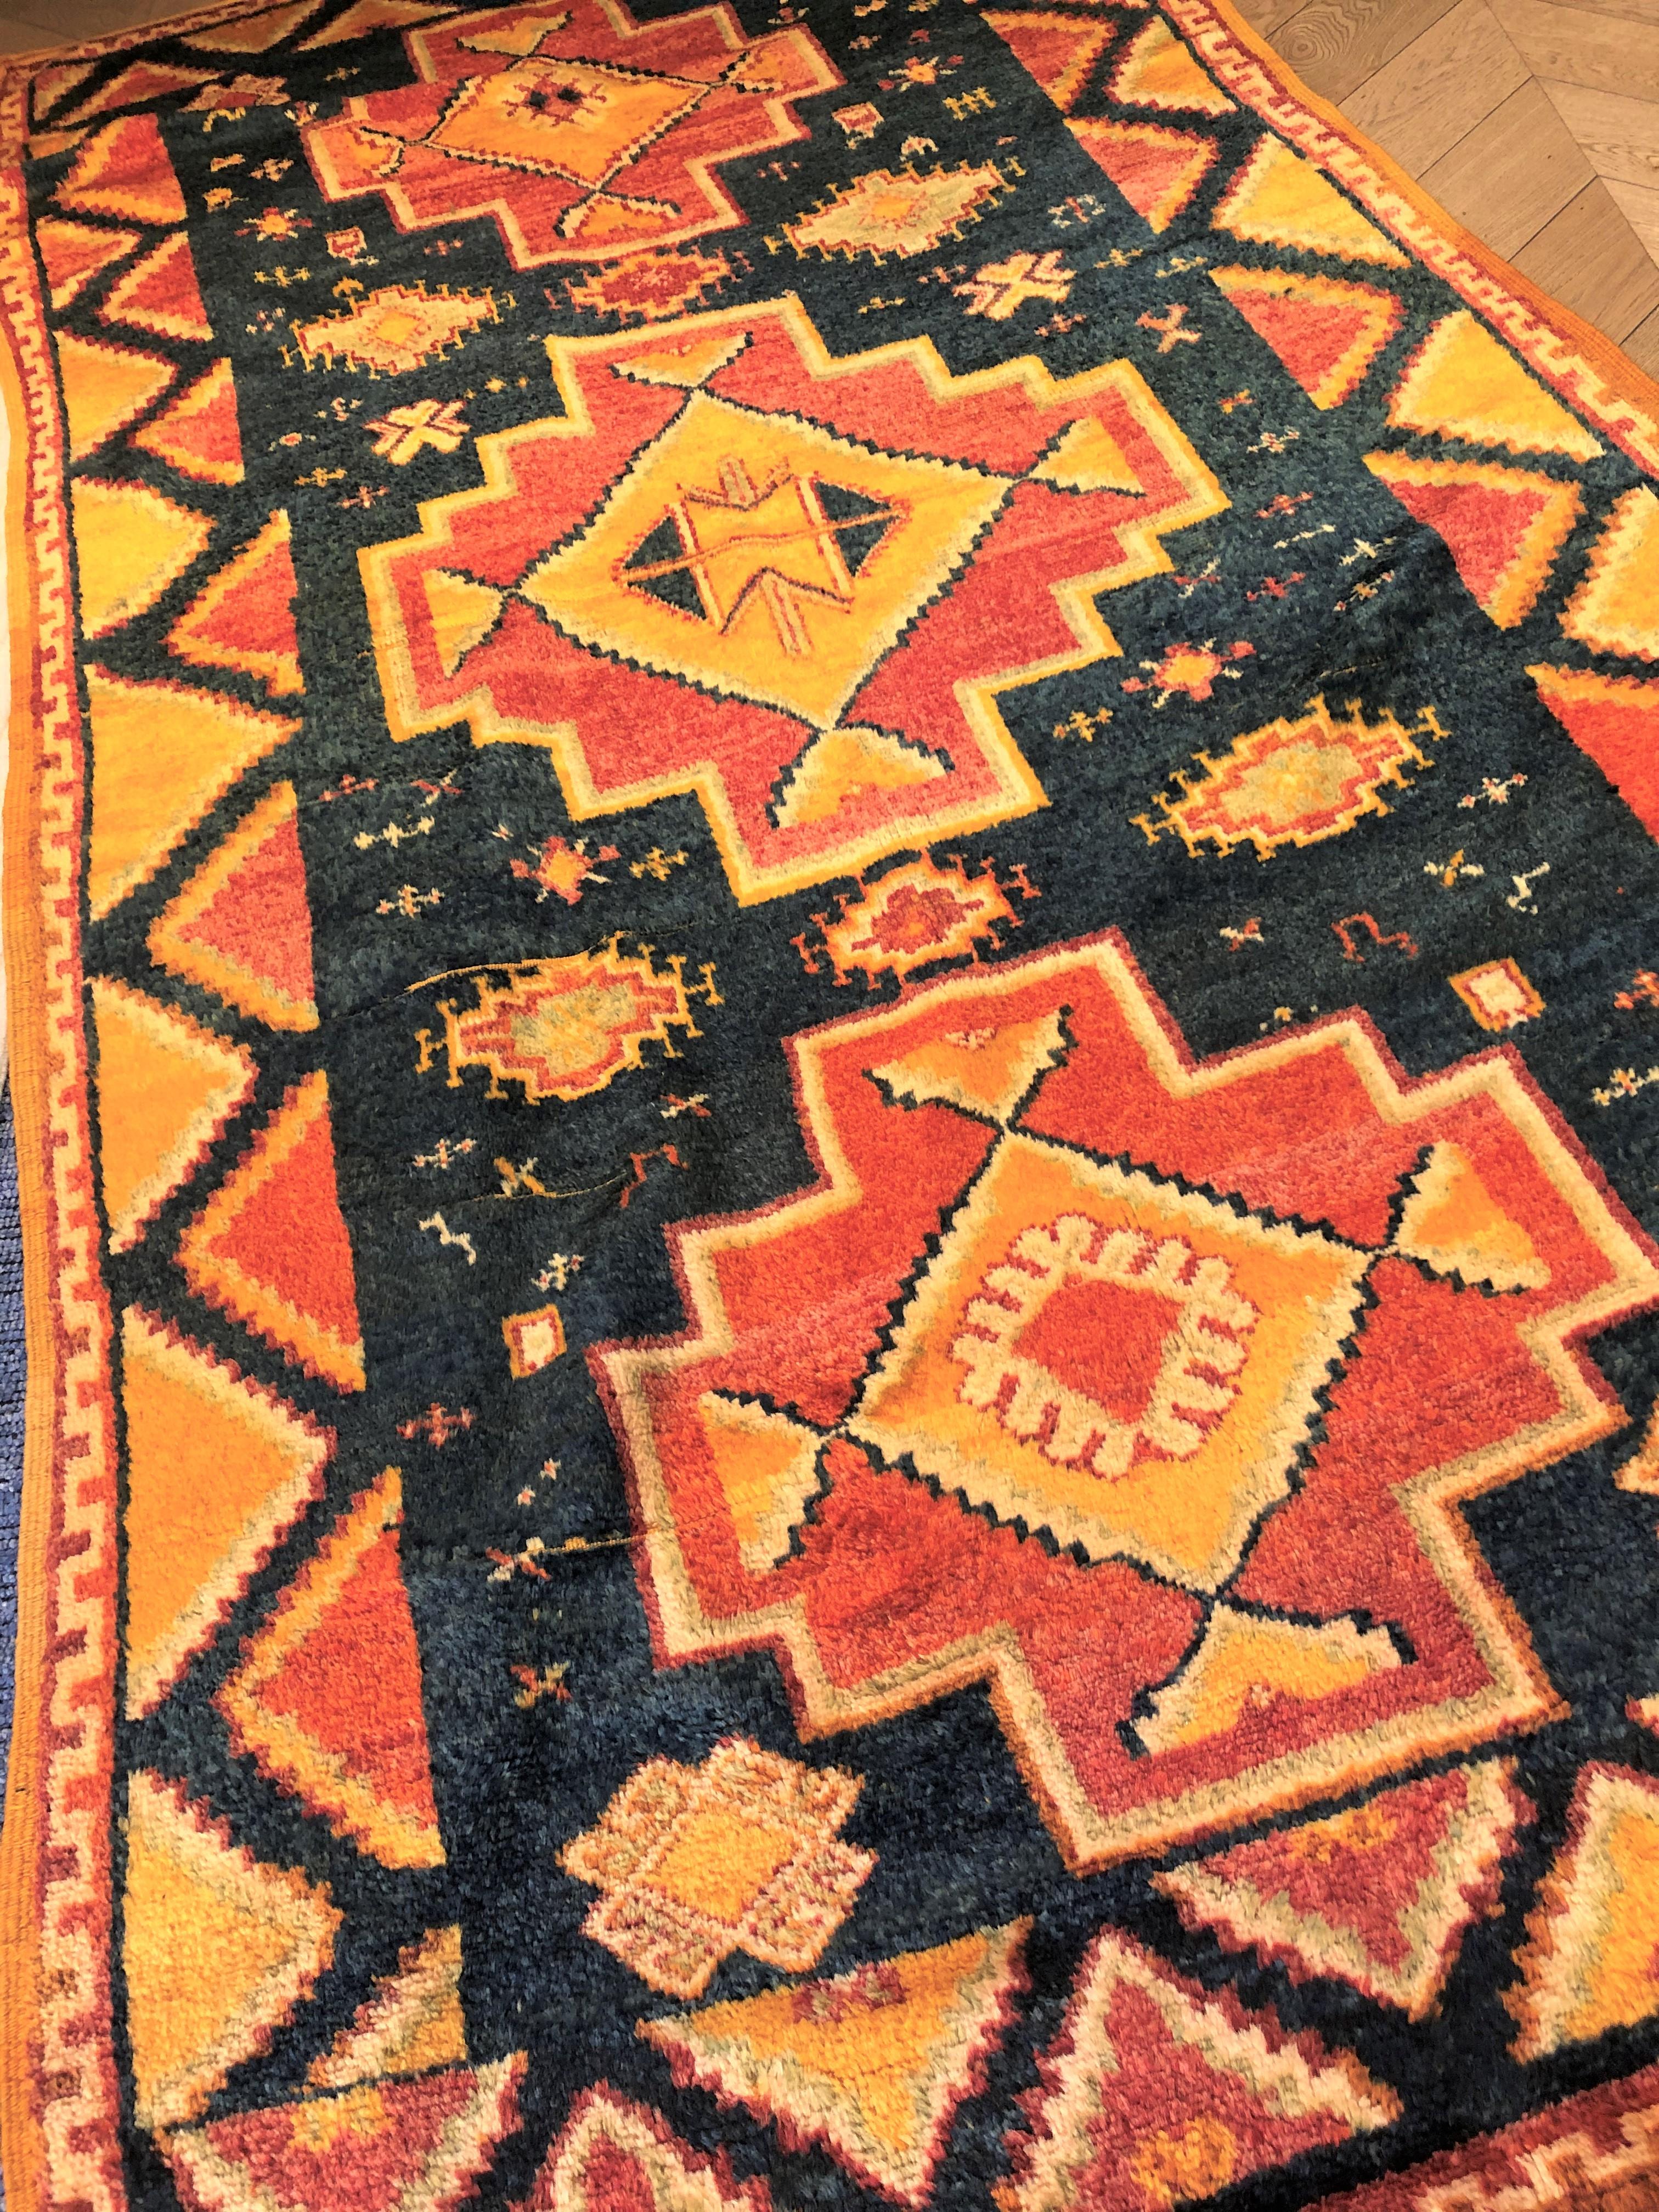 Tapis berbère, fabrication ancienne, qualité oouazouite, caractérisé par un cadre en laine jaune safran. Ces tapis ont une décoration qui dépeint la vie quotidienne de la tribu ainsi que des thèmes classiques de la tradition musulmane. Trois